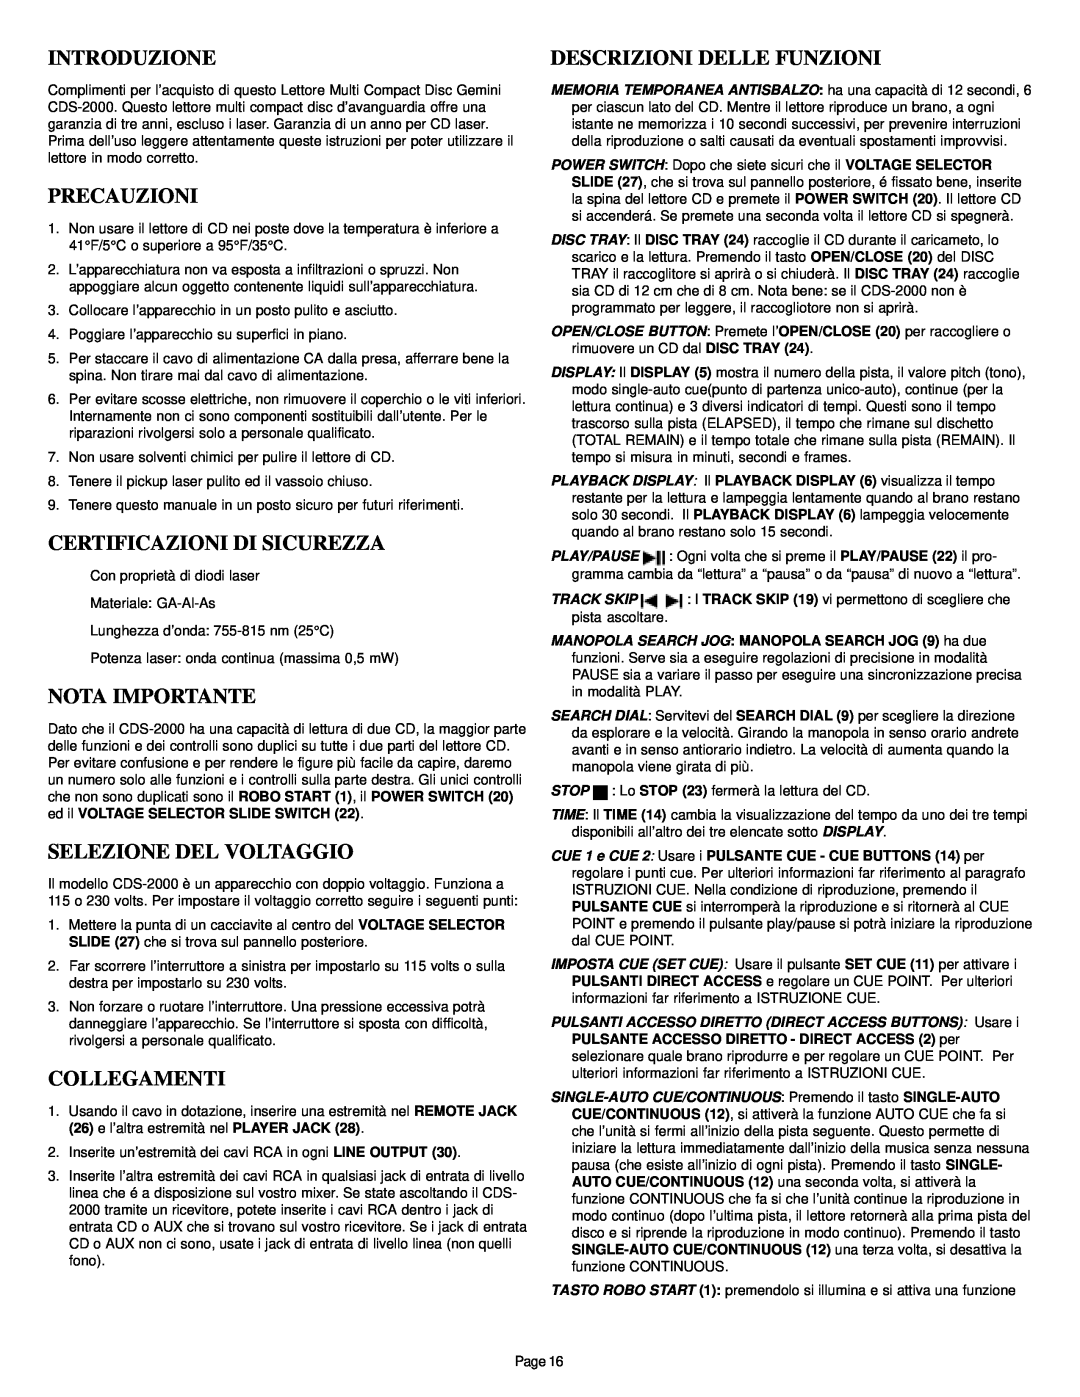 Gemini CDS-2000 manual Introduzione, Precauzioni, Certificazioni Di Sicurezza, Selezione Del Voltaggio, Collegamenti 